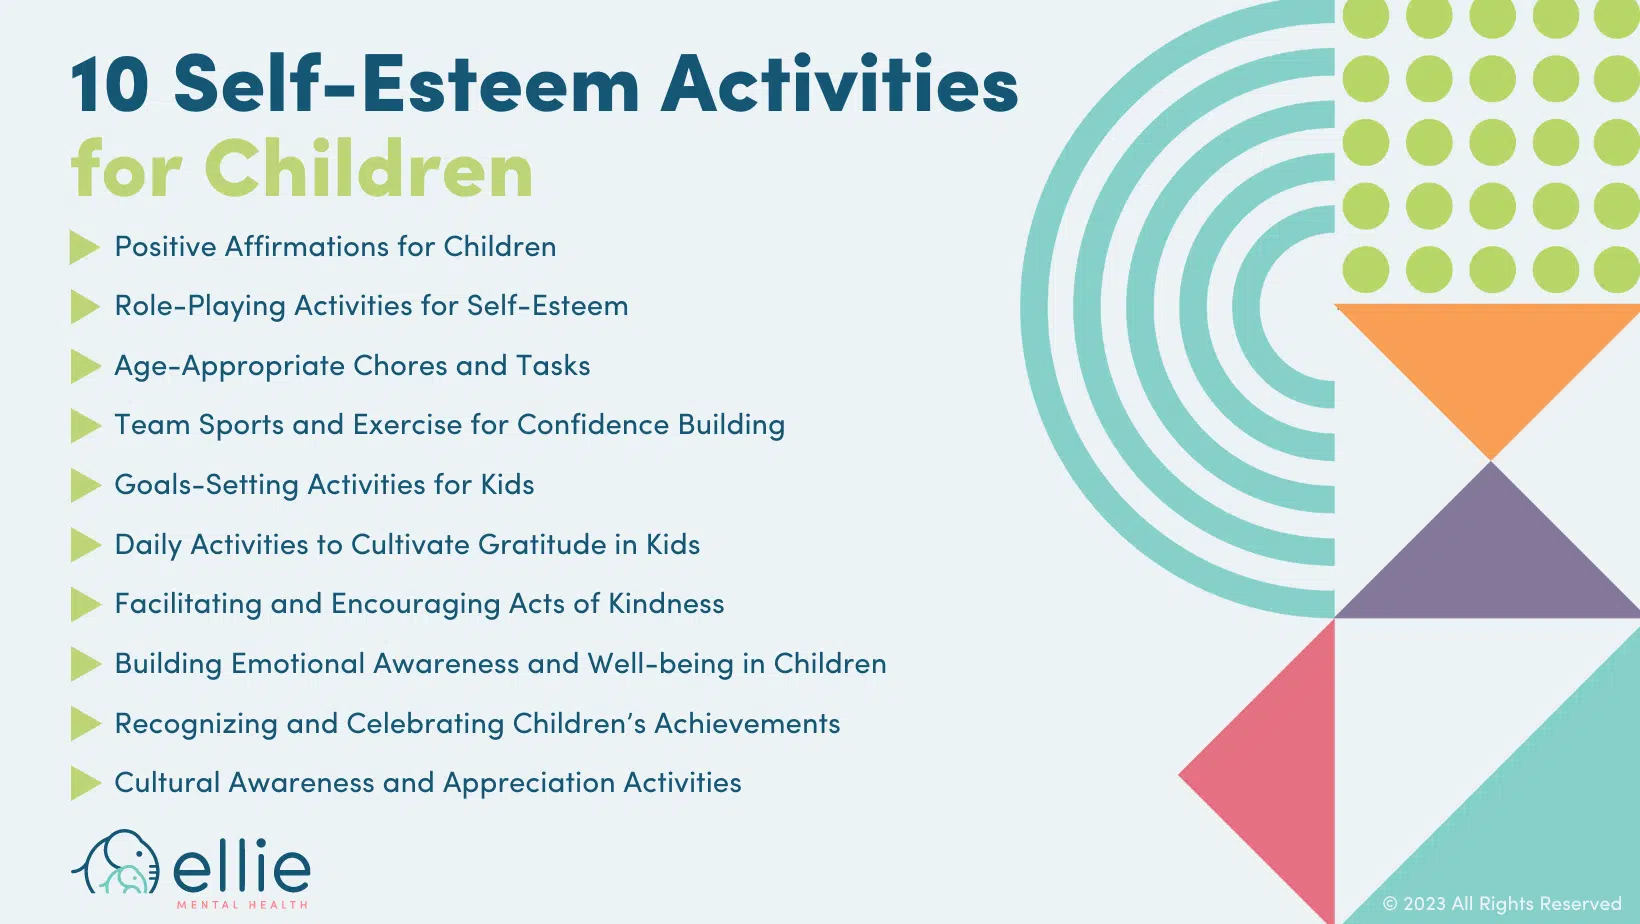 10 self-esteem activities for children infographic